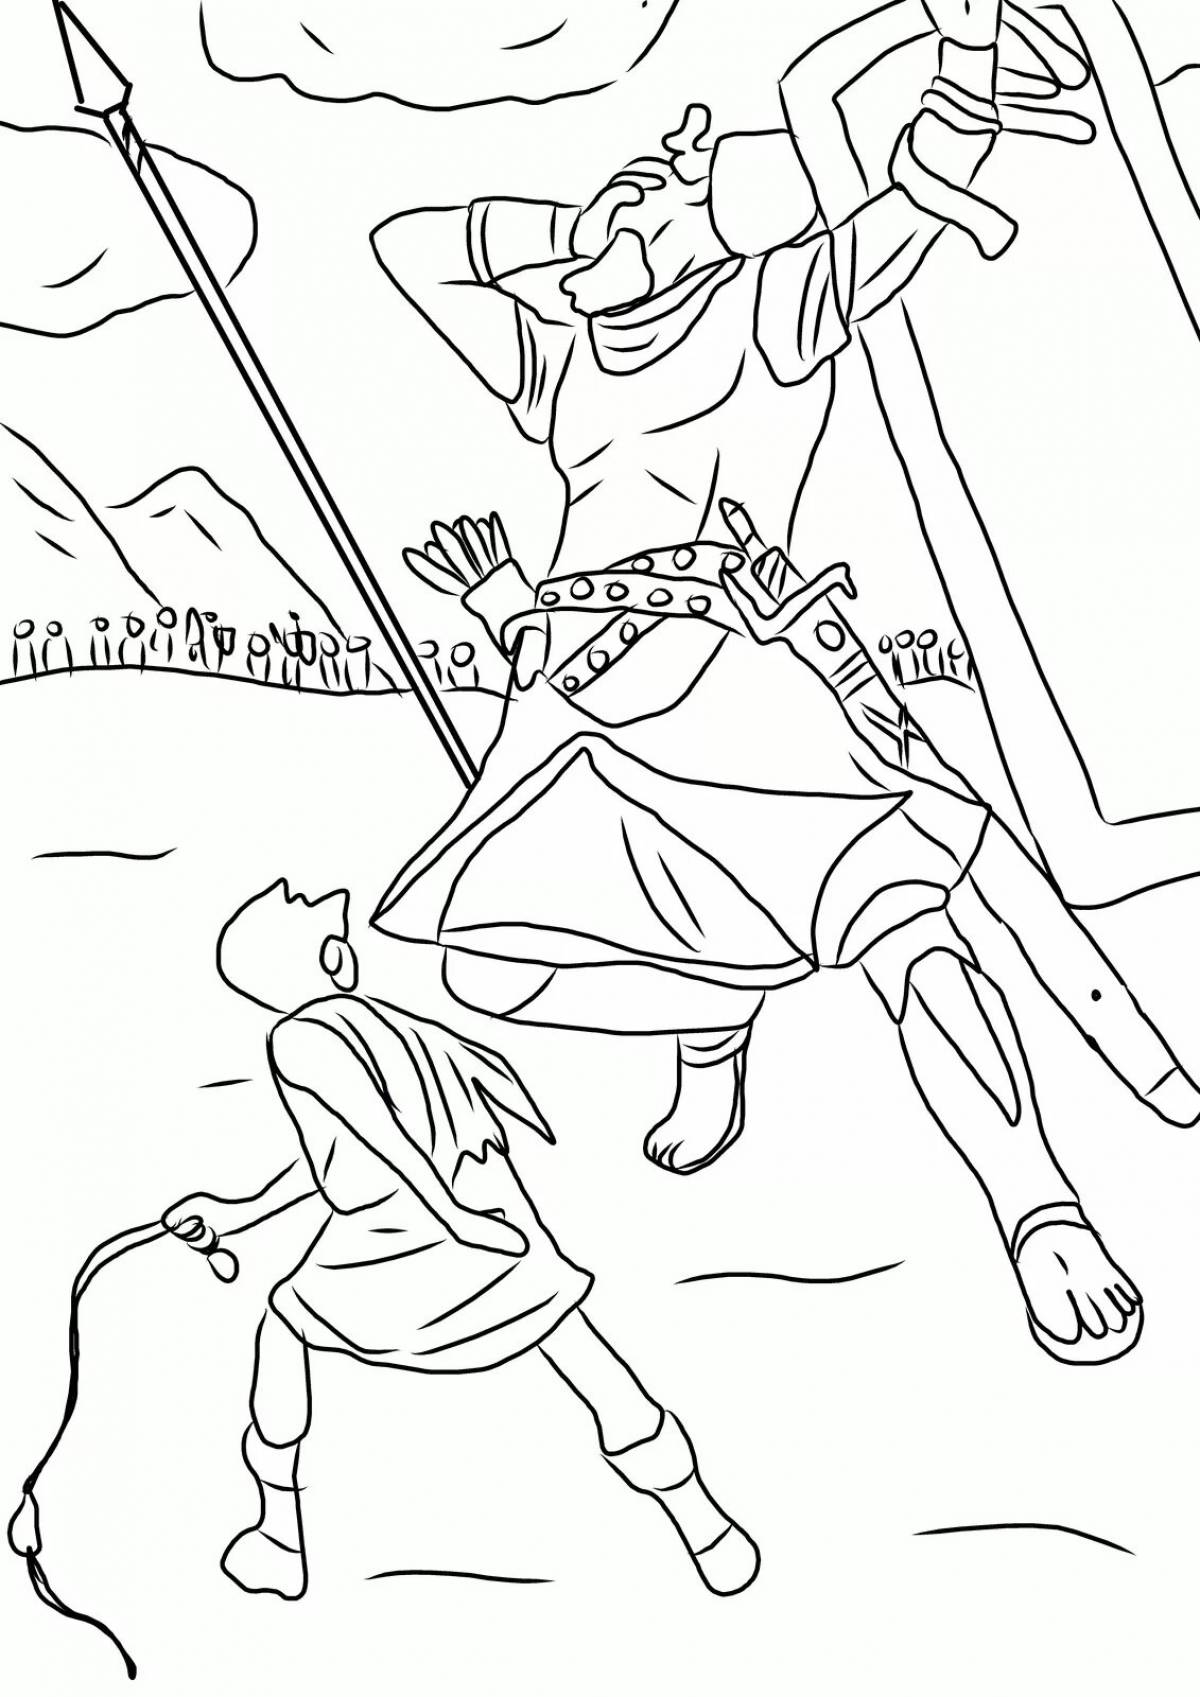 Рисунок битва на реке фат 5 класс. Битва Давида и Голиафа рисунок.